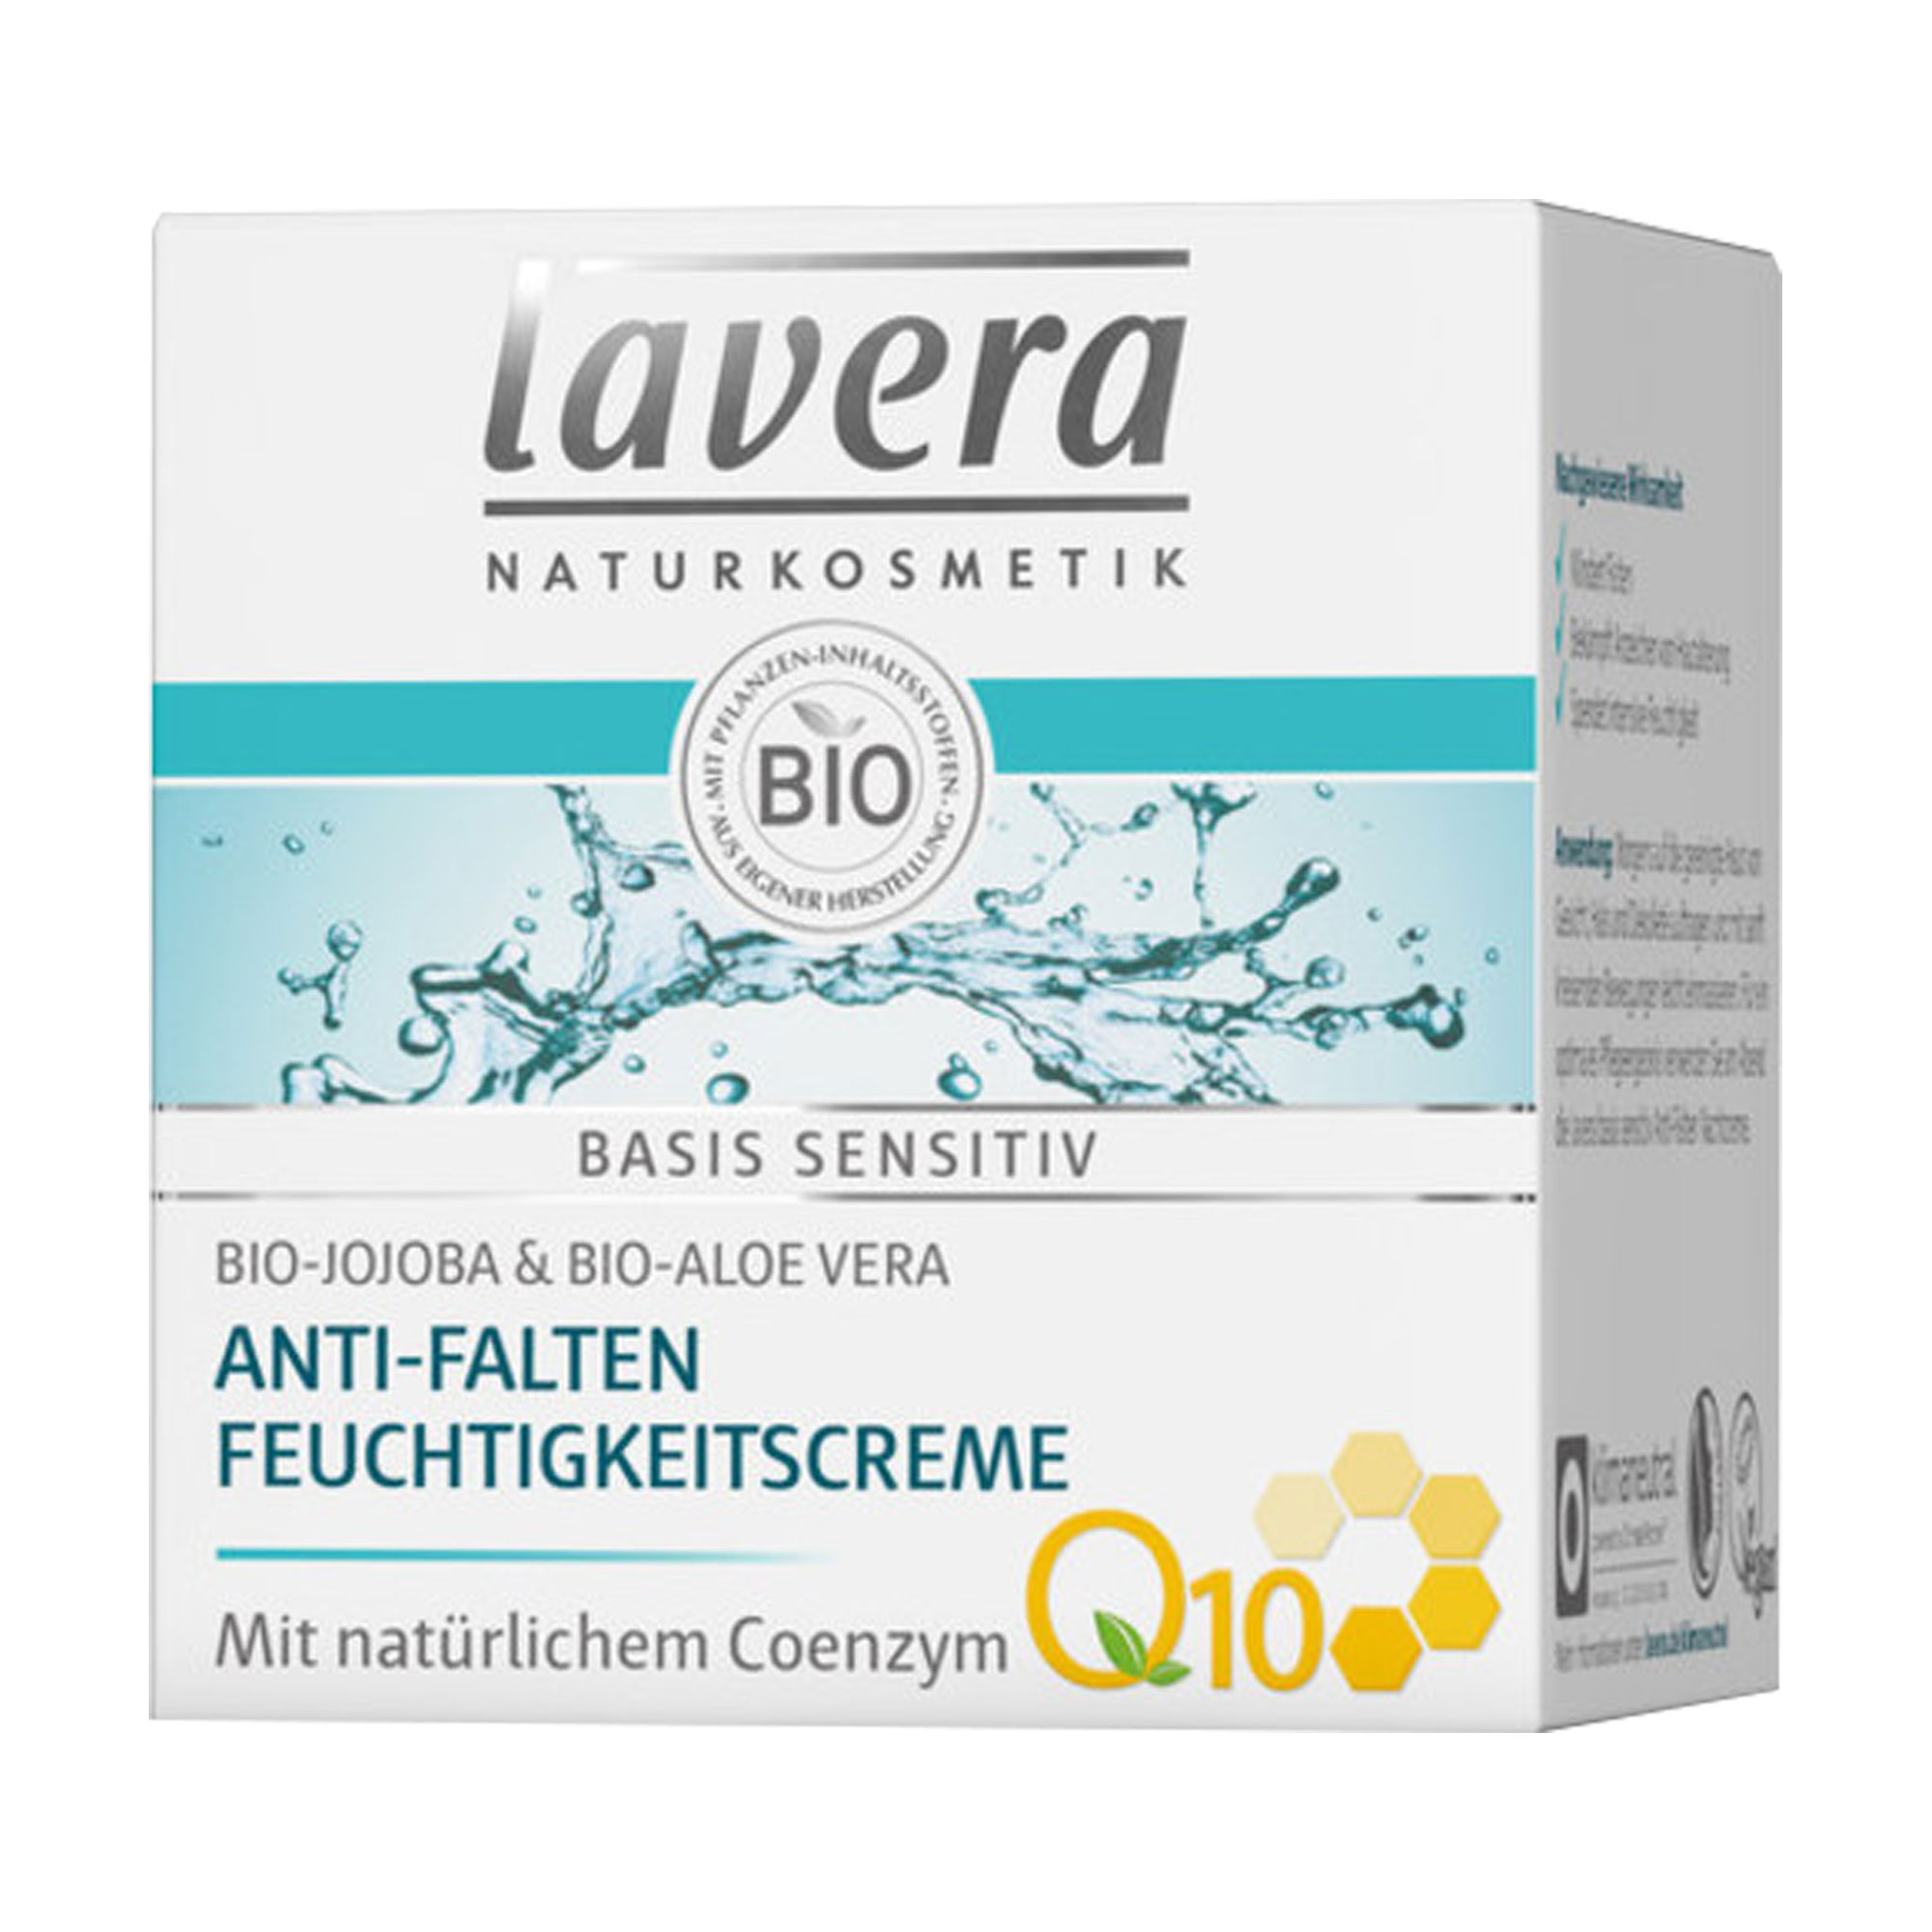 Lavera Basis Sensitiv Q10 Anti-Falten Feuchtigkeitscreme